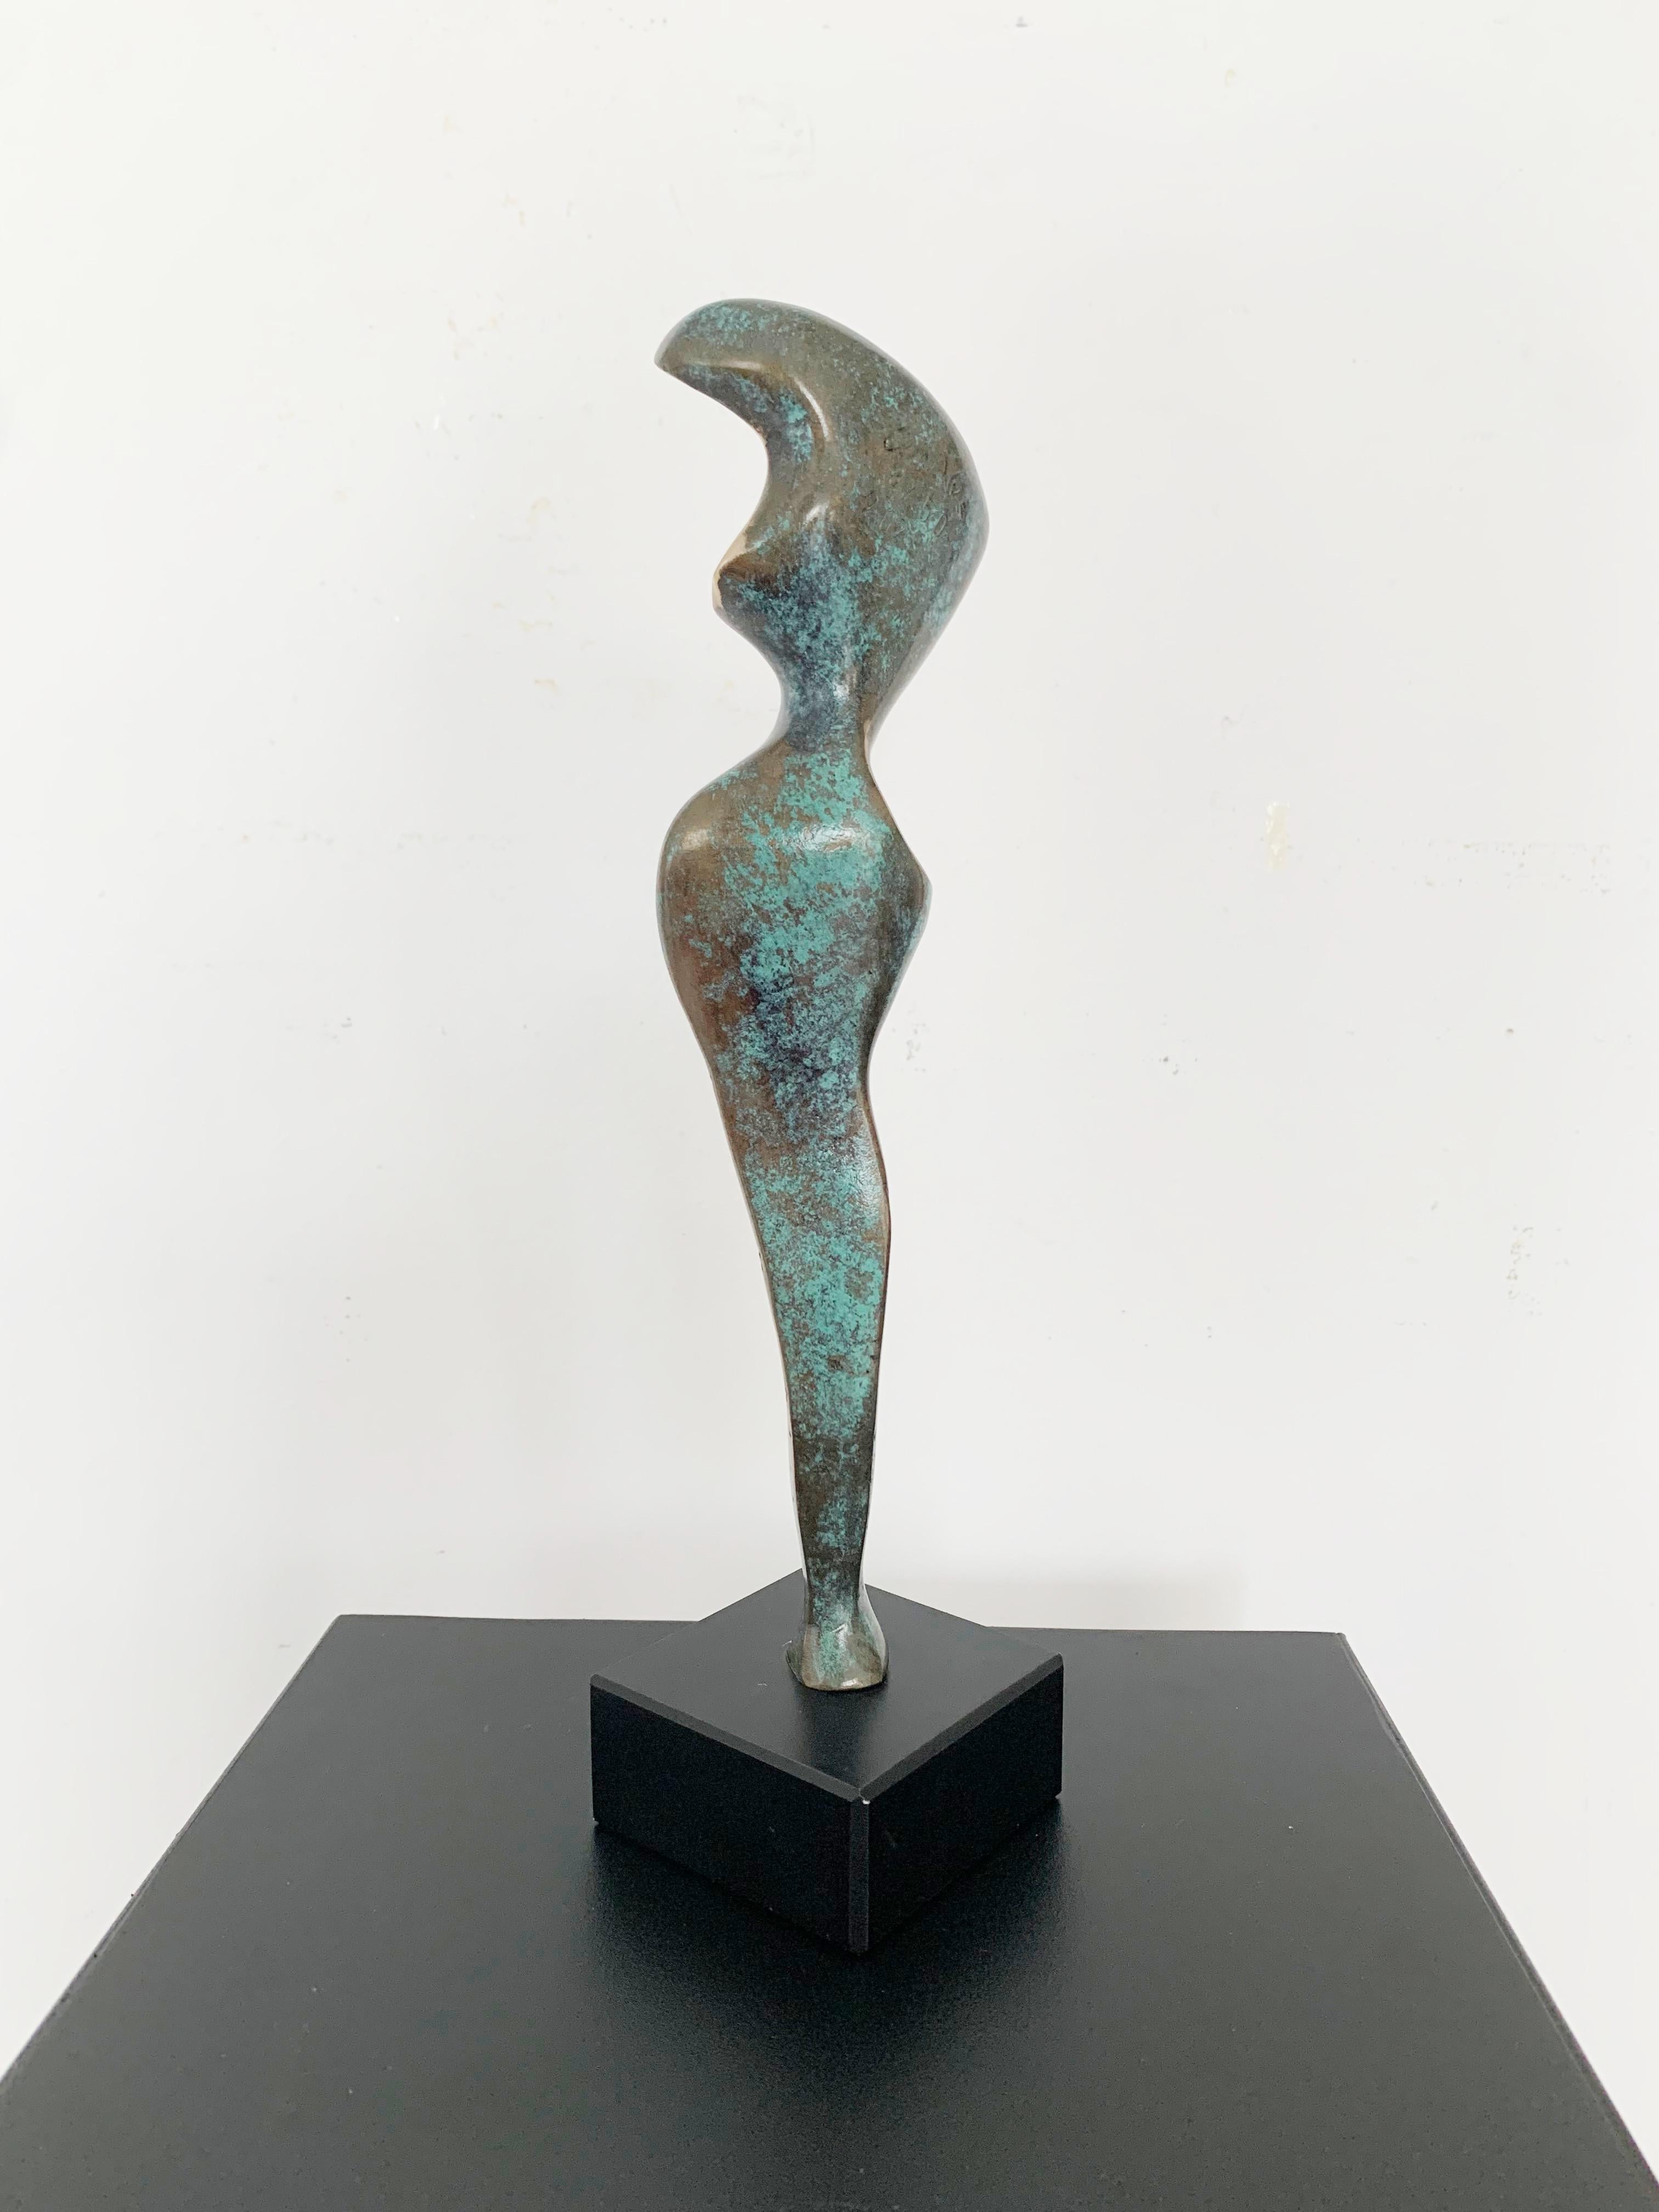 Zeitgenössische Bronzeskulptur auf Marmorsockel des polnischen Künstlers Stan Wysocki. Das Kunstwerk stammt aus einer limitierten Auflage von 50 Stück. Die Skulptur stellt eine weibliche Figur dar, die durch einen geometrischen, synthetisierenden